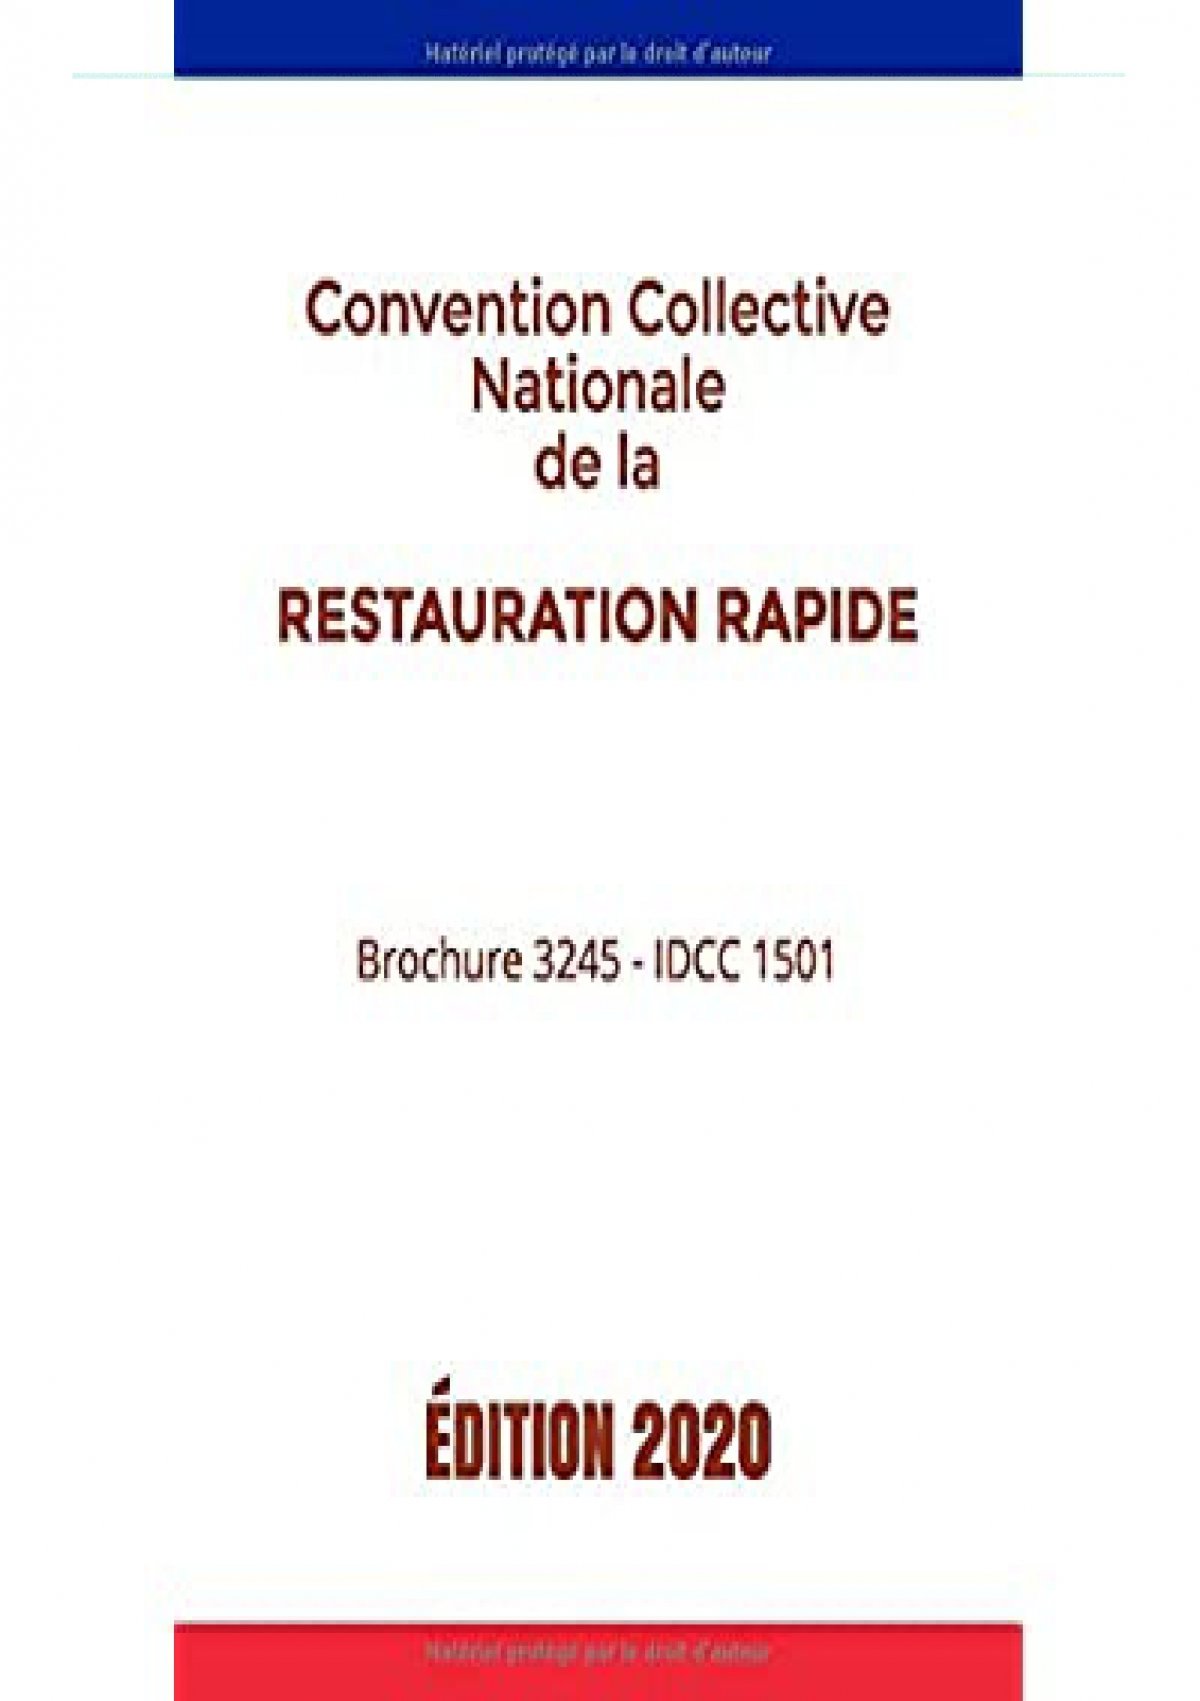 Telecharger Convention Collective Nationale De La